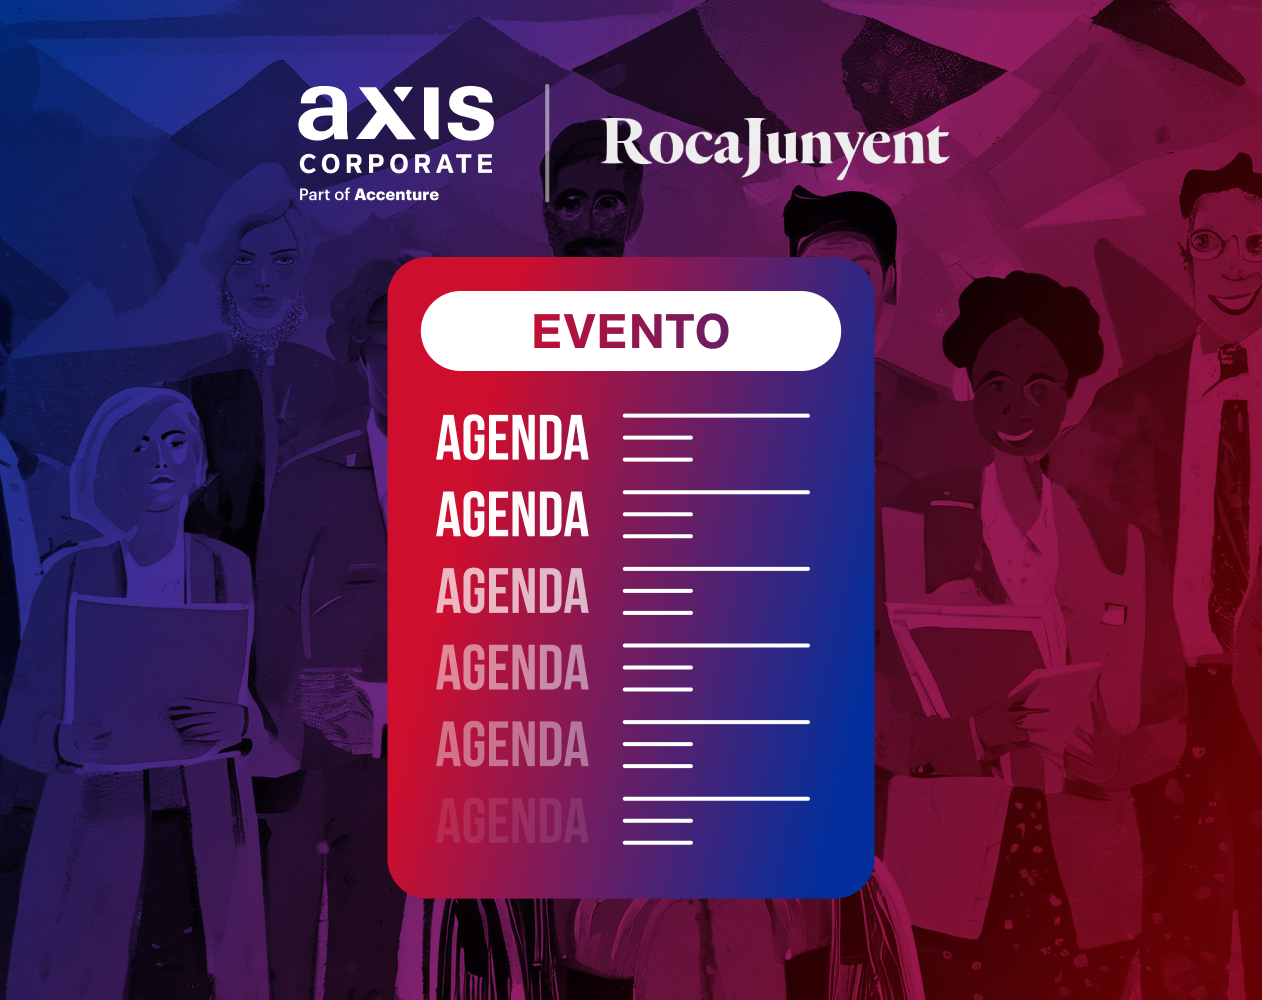 Agenda - Observatorio Rocajunyent - Axis Corporate part of Accenture